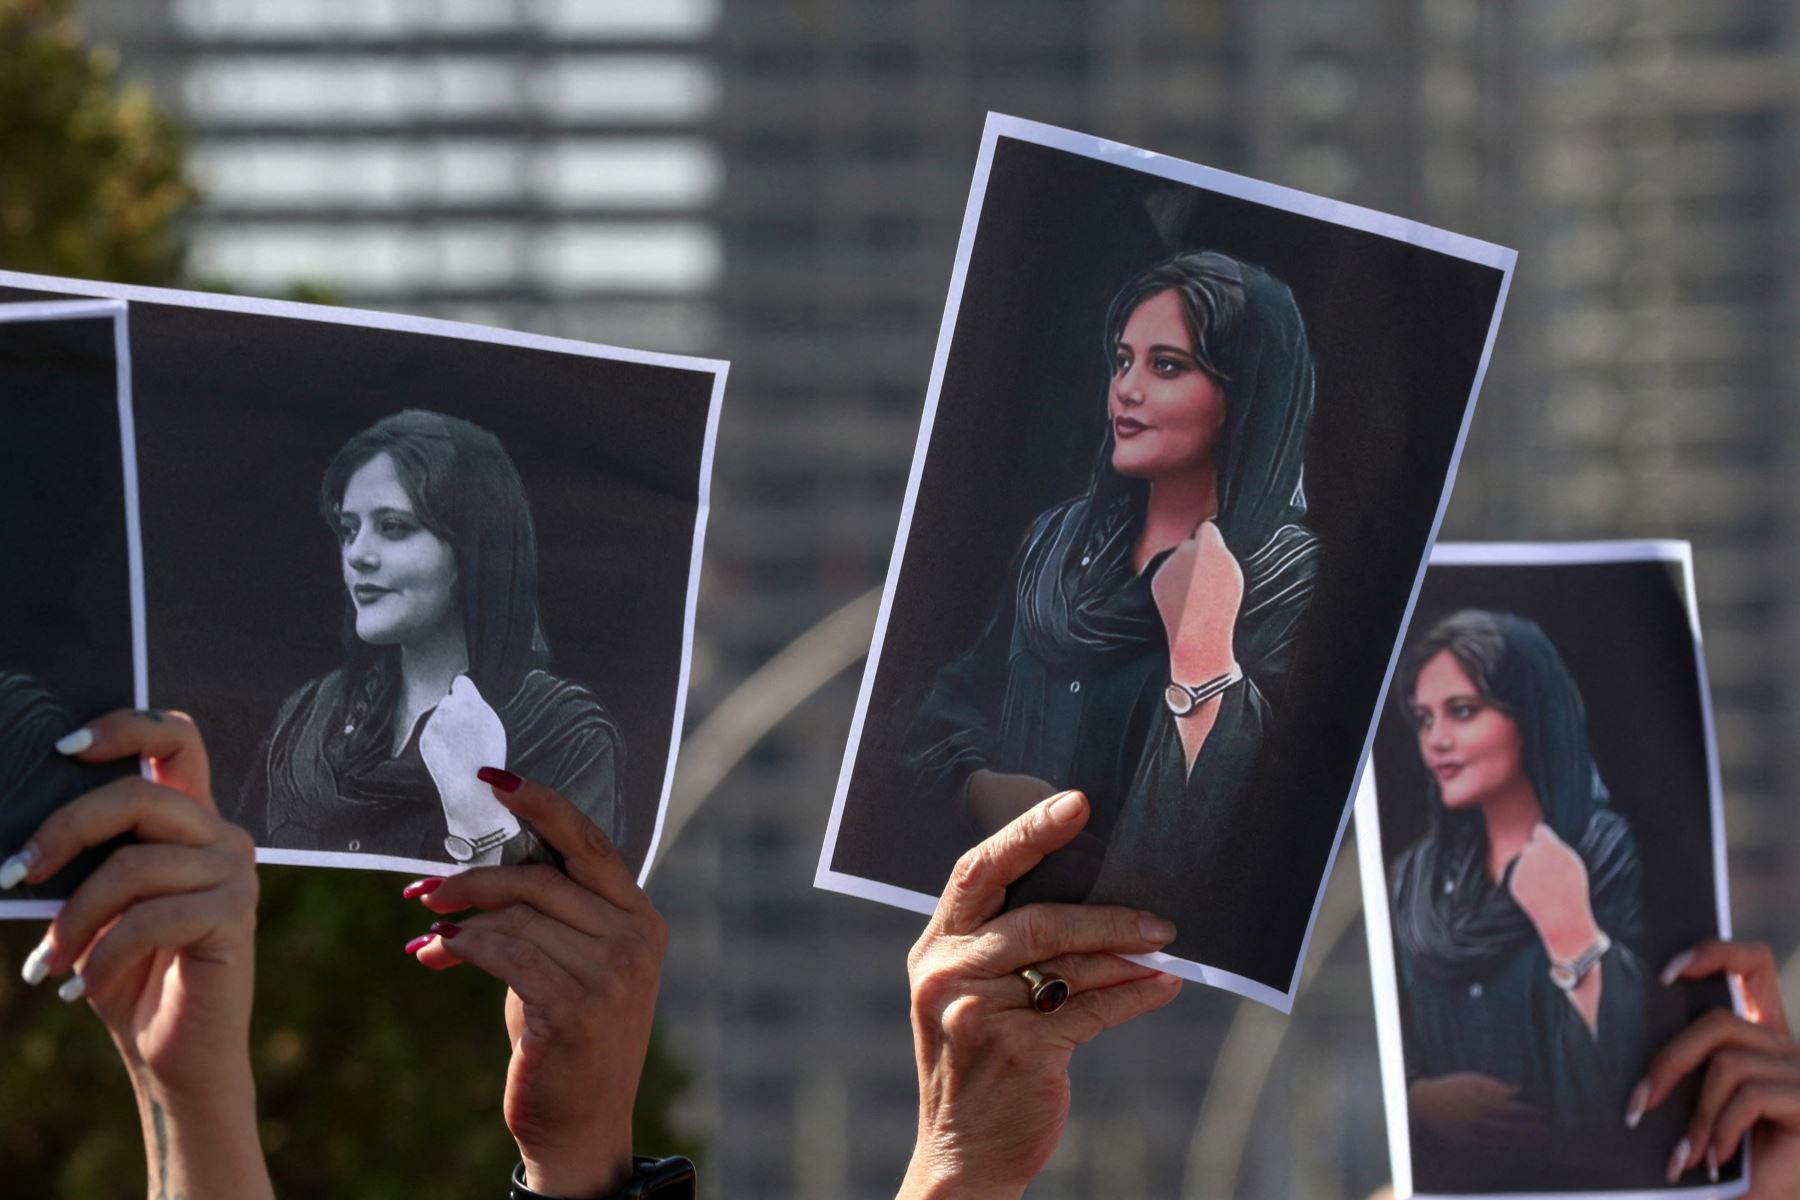 Las mujeres sostienen carteles con la imagen de Mahsa Amini, de 22 años, quien murió bajo la custodia de las autoridades iraníes, durante una manifestación denunciando su muerte por kurdos iraquíes e iraníes frente a las oficinas de la ONU. Foto: AFP